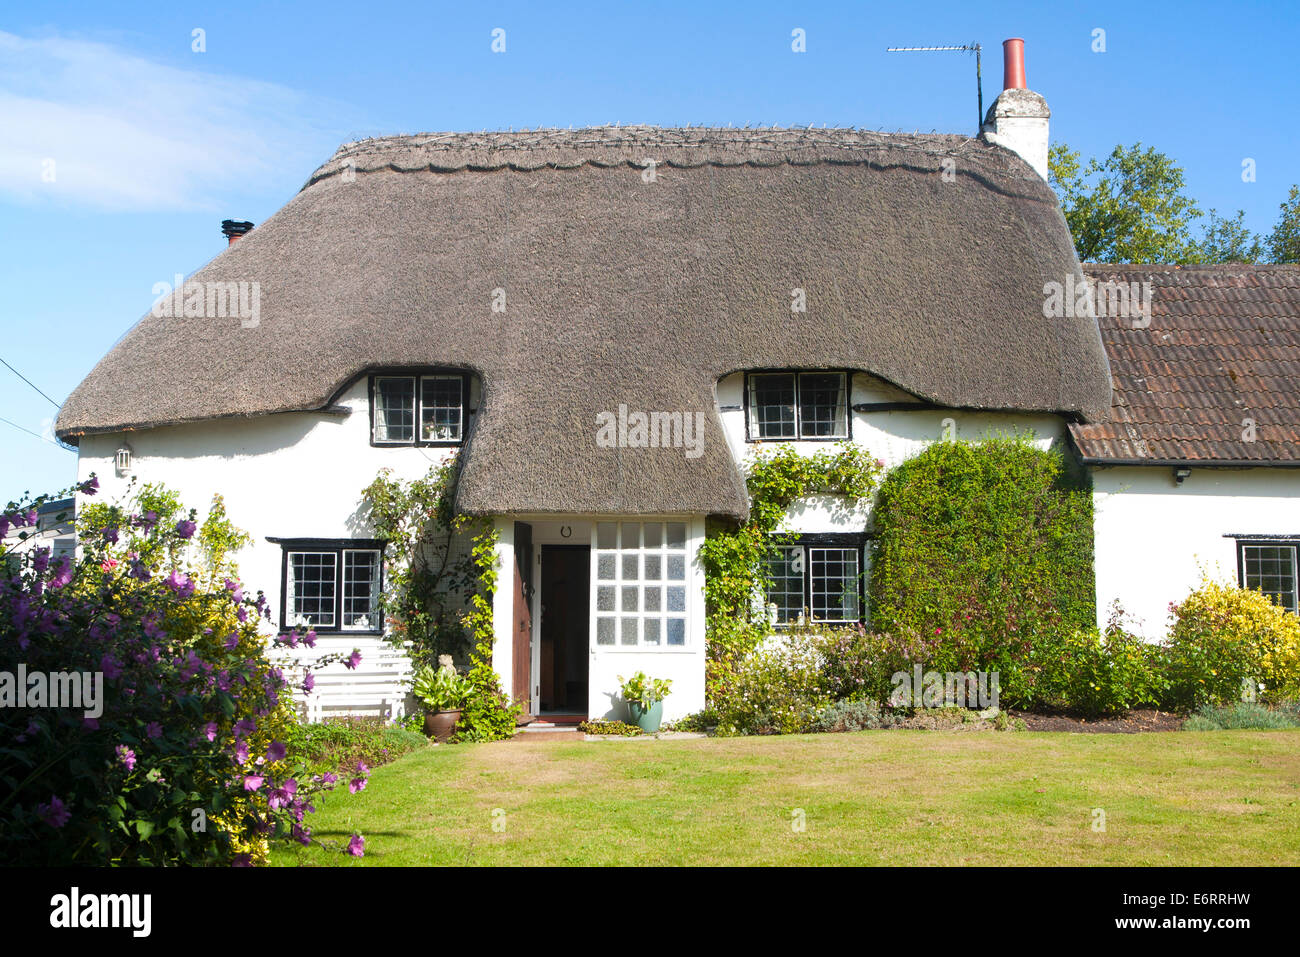 Jolie maison de campagne en chaume Cherhill, Wiltshire, Angleterre Banque D'Images